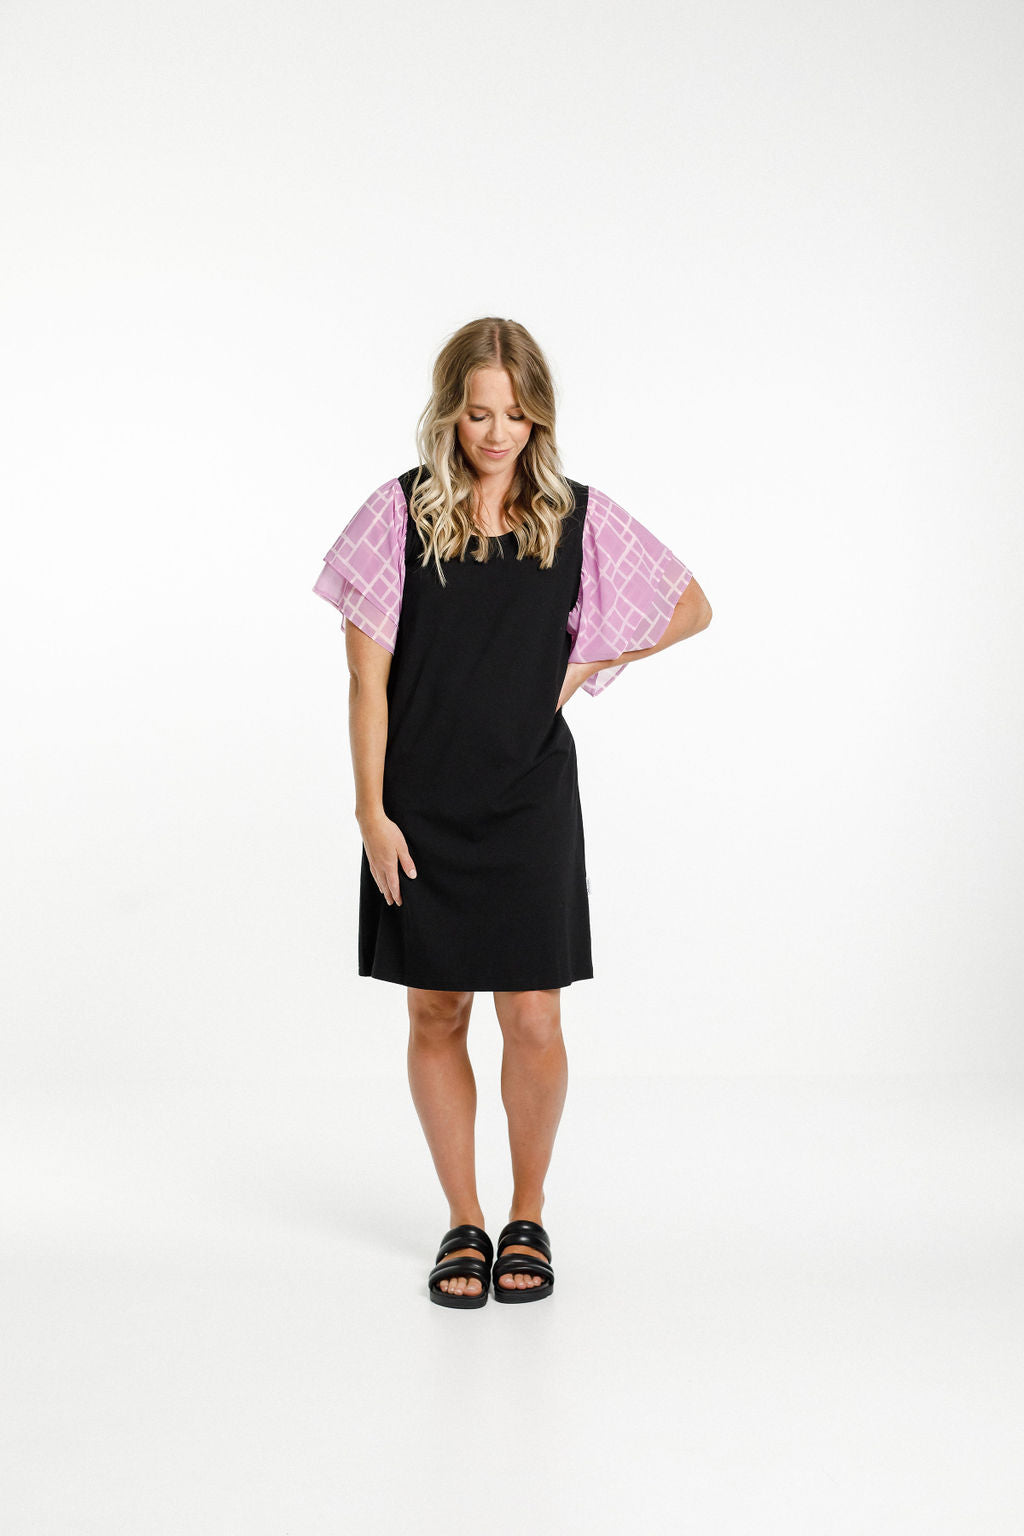 Lola Dress - Black with Pink Bloom Print Sleeves